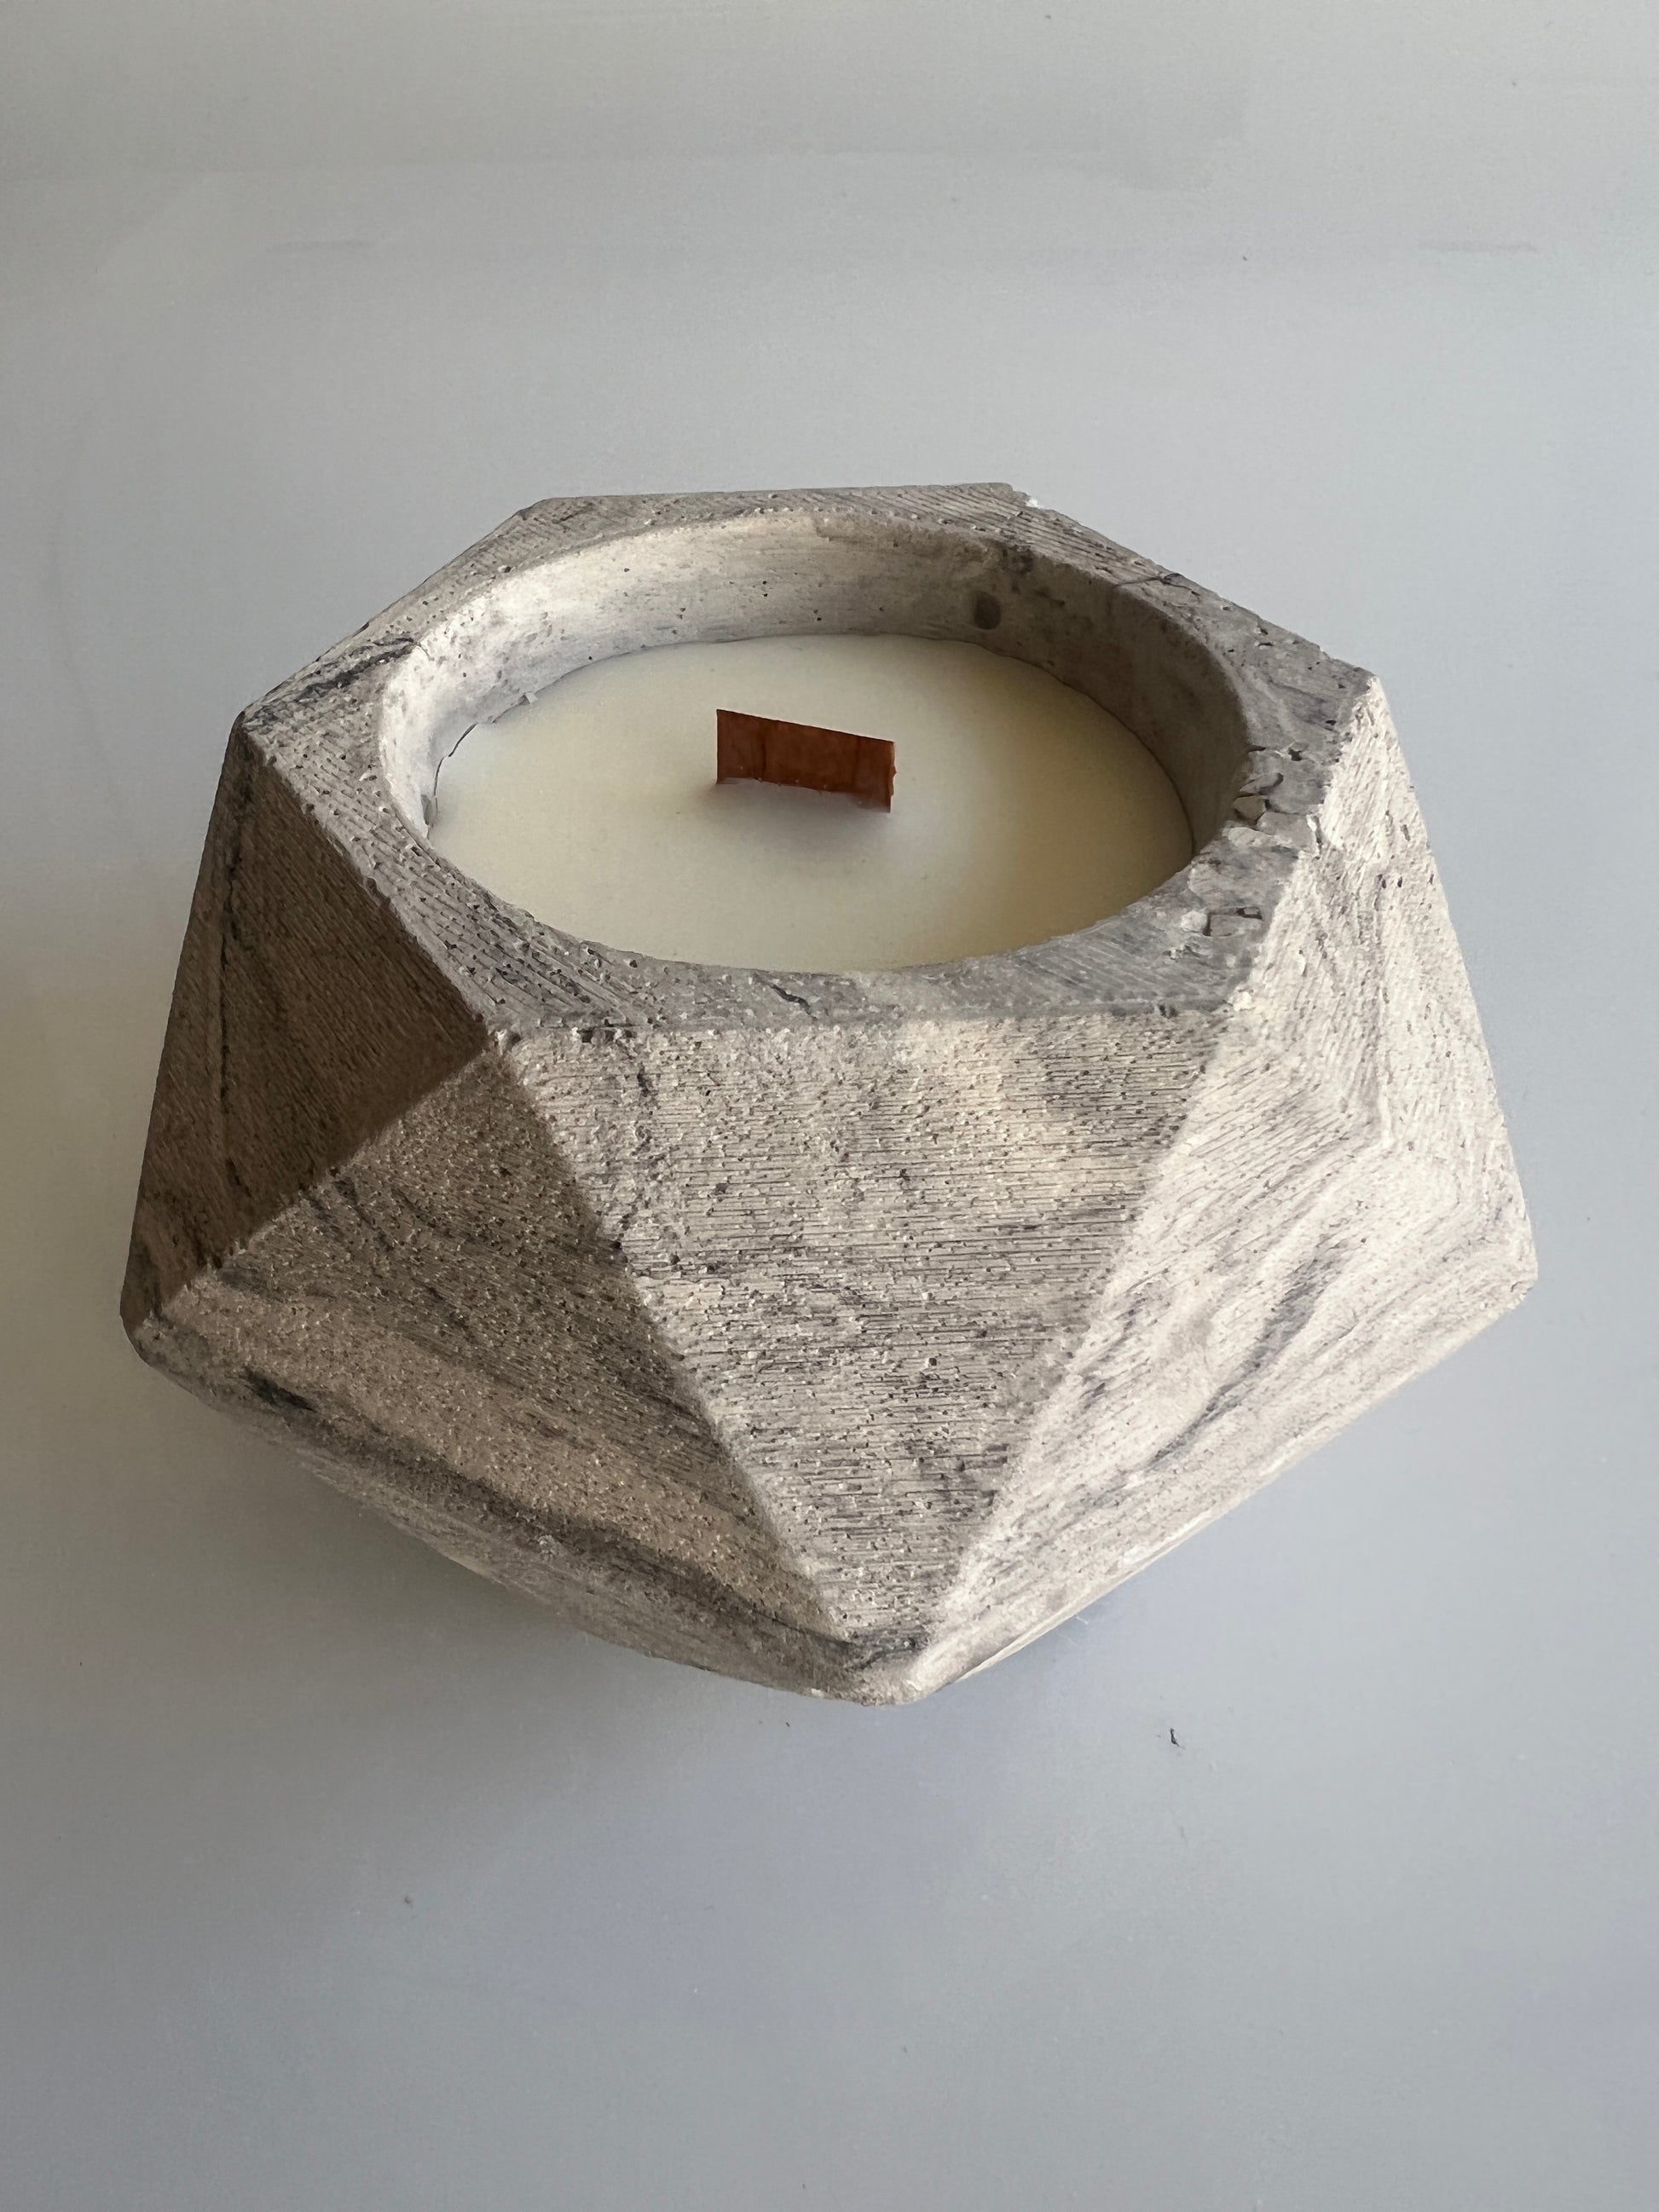 candela in cemento e cera di soia profumata con oli essenziali naturali colore grigio e marmorizzato nero